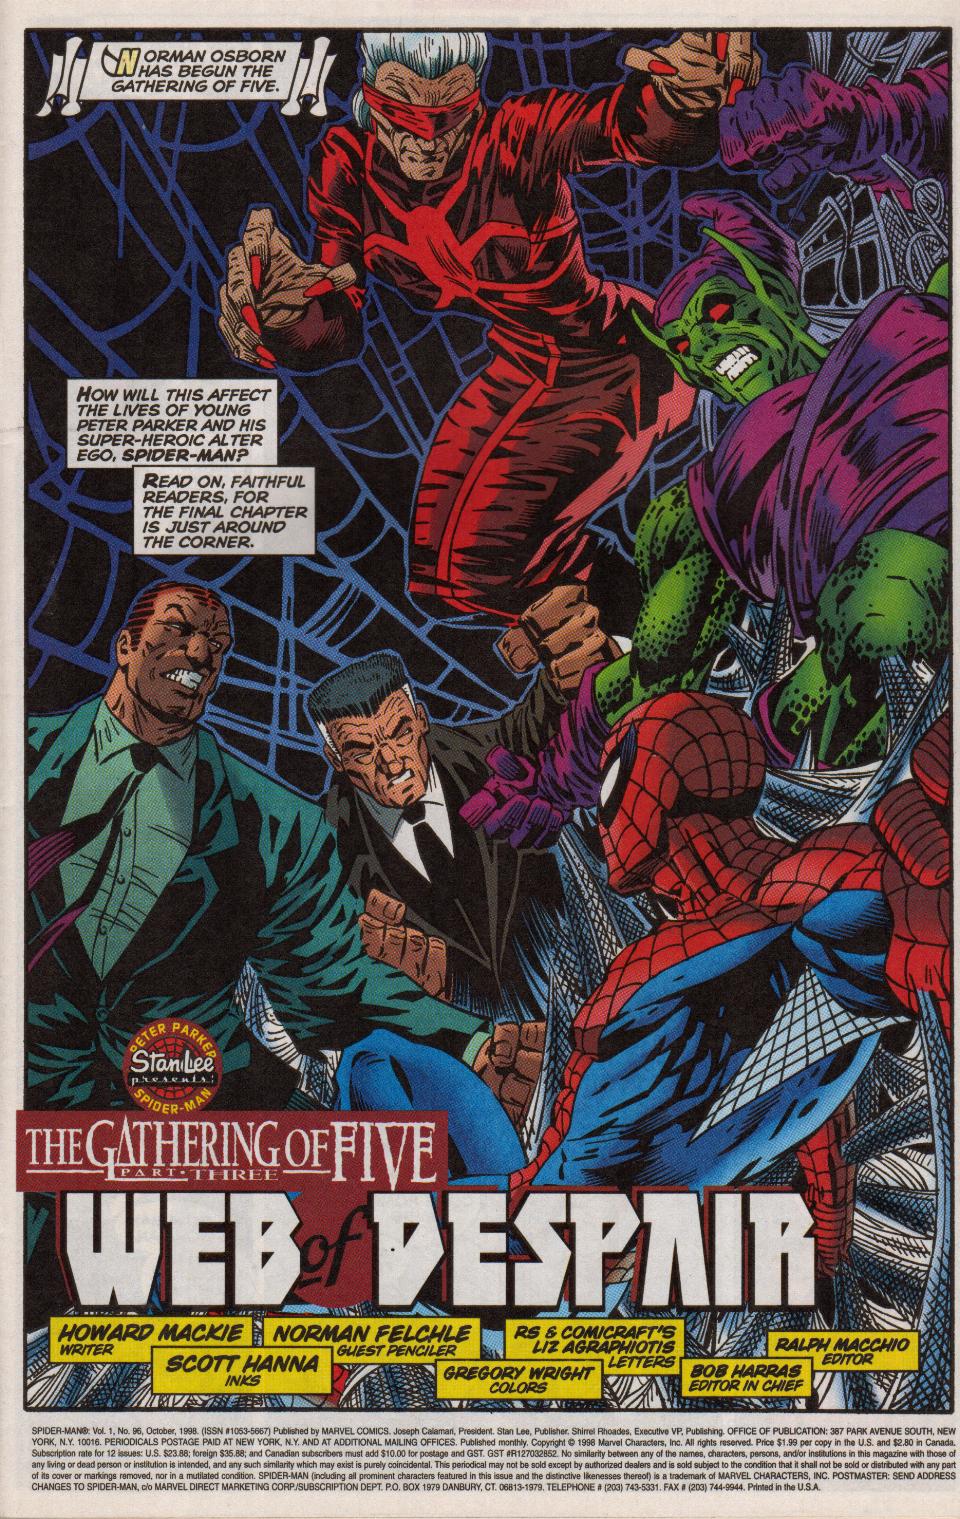 Spider Man 1990 Issue 96 Web Of Despair | Read Spider Man 1990 Issue 96 Web  Of Despair comic online in high quality. Read Full Comic online for free -  Read comics